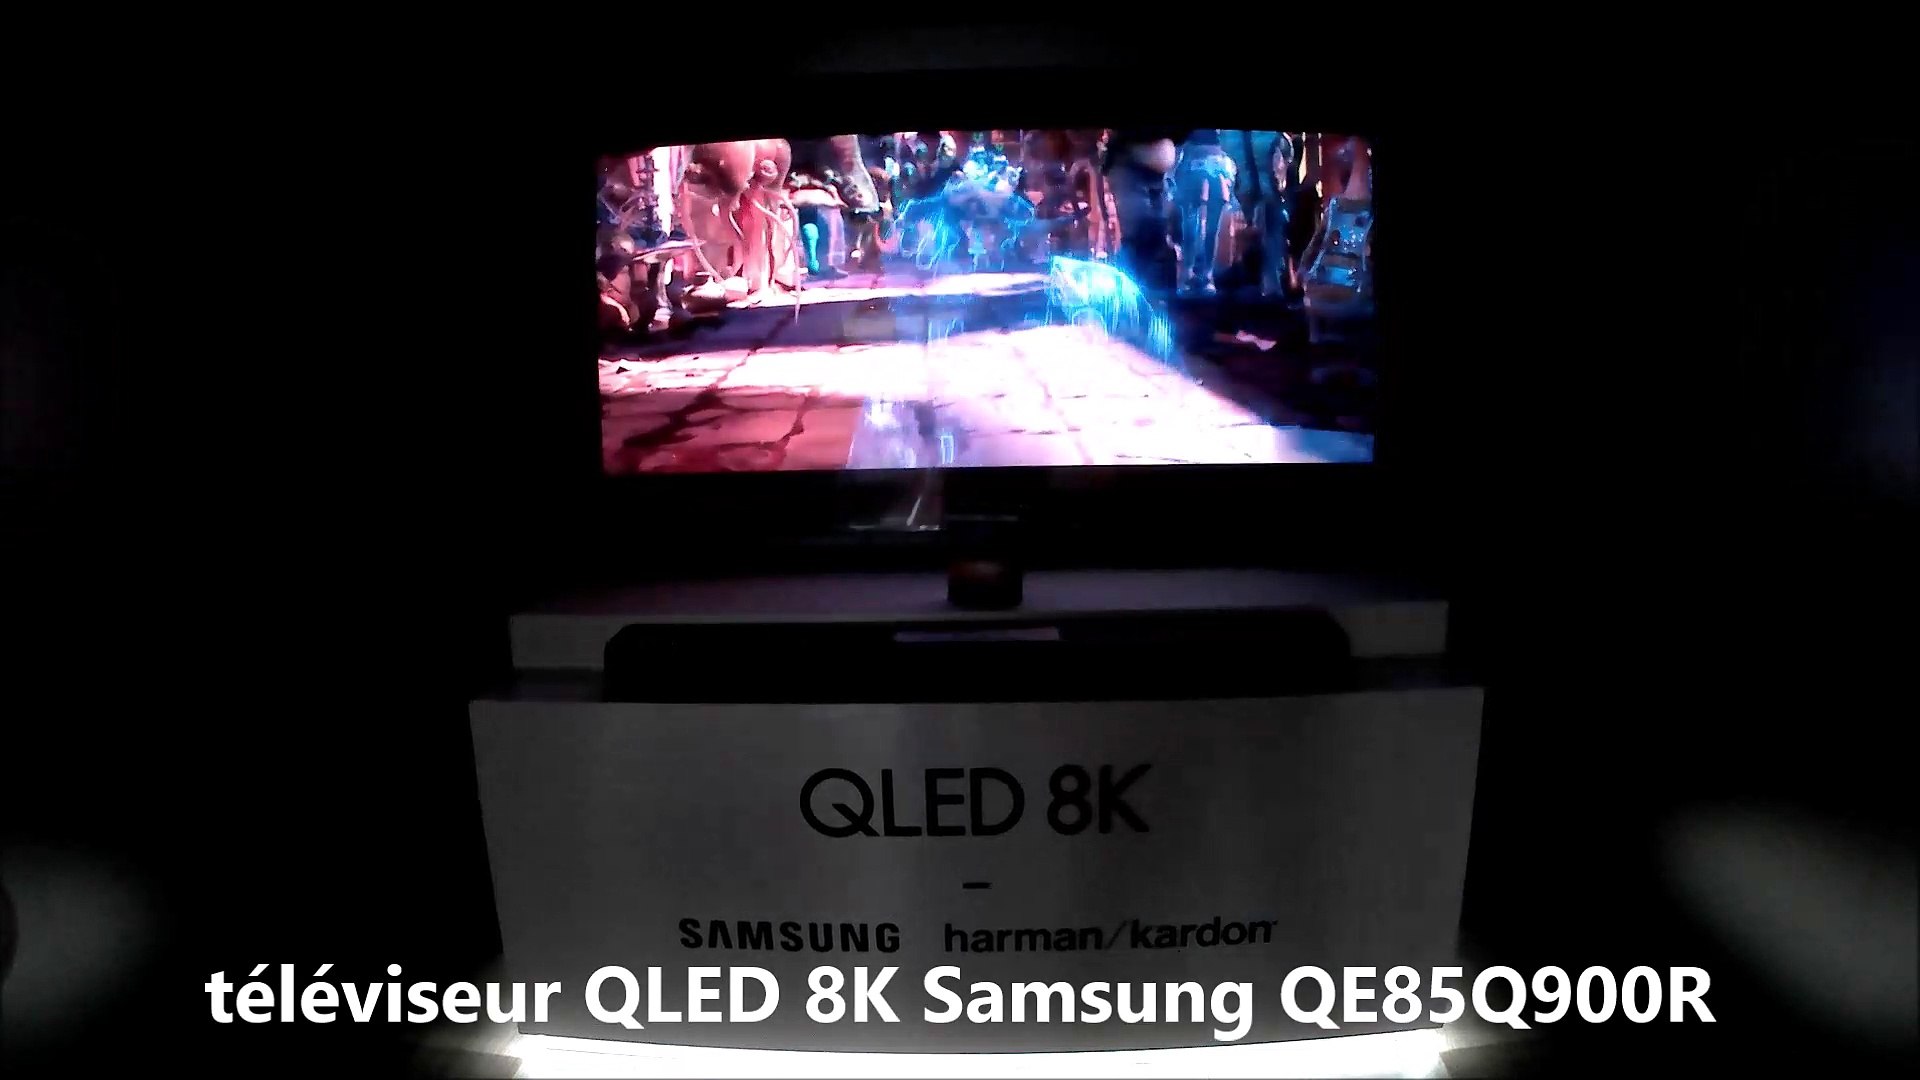 téléviseur QLED 8K Samsung QE85Q900R @ Paris Audio Vidéo Show 2018